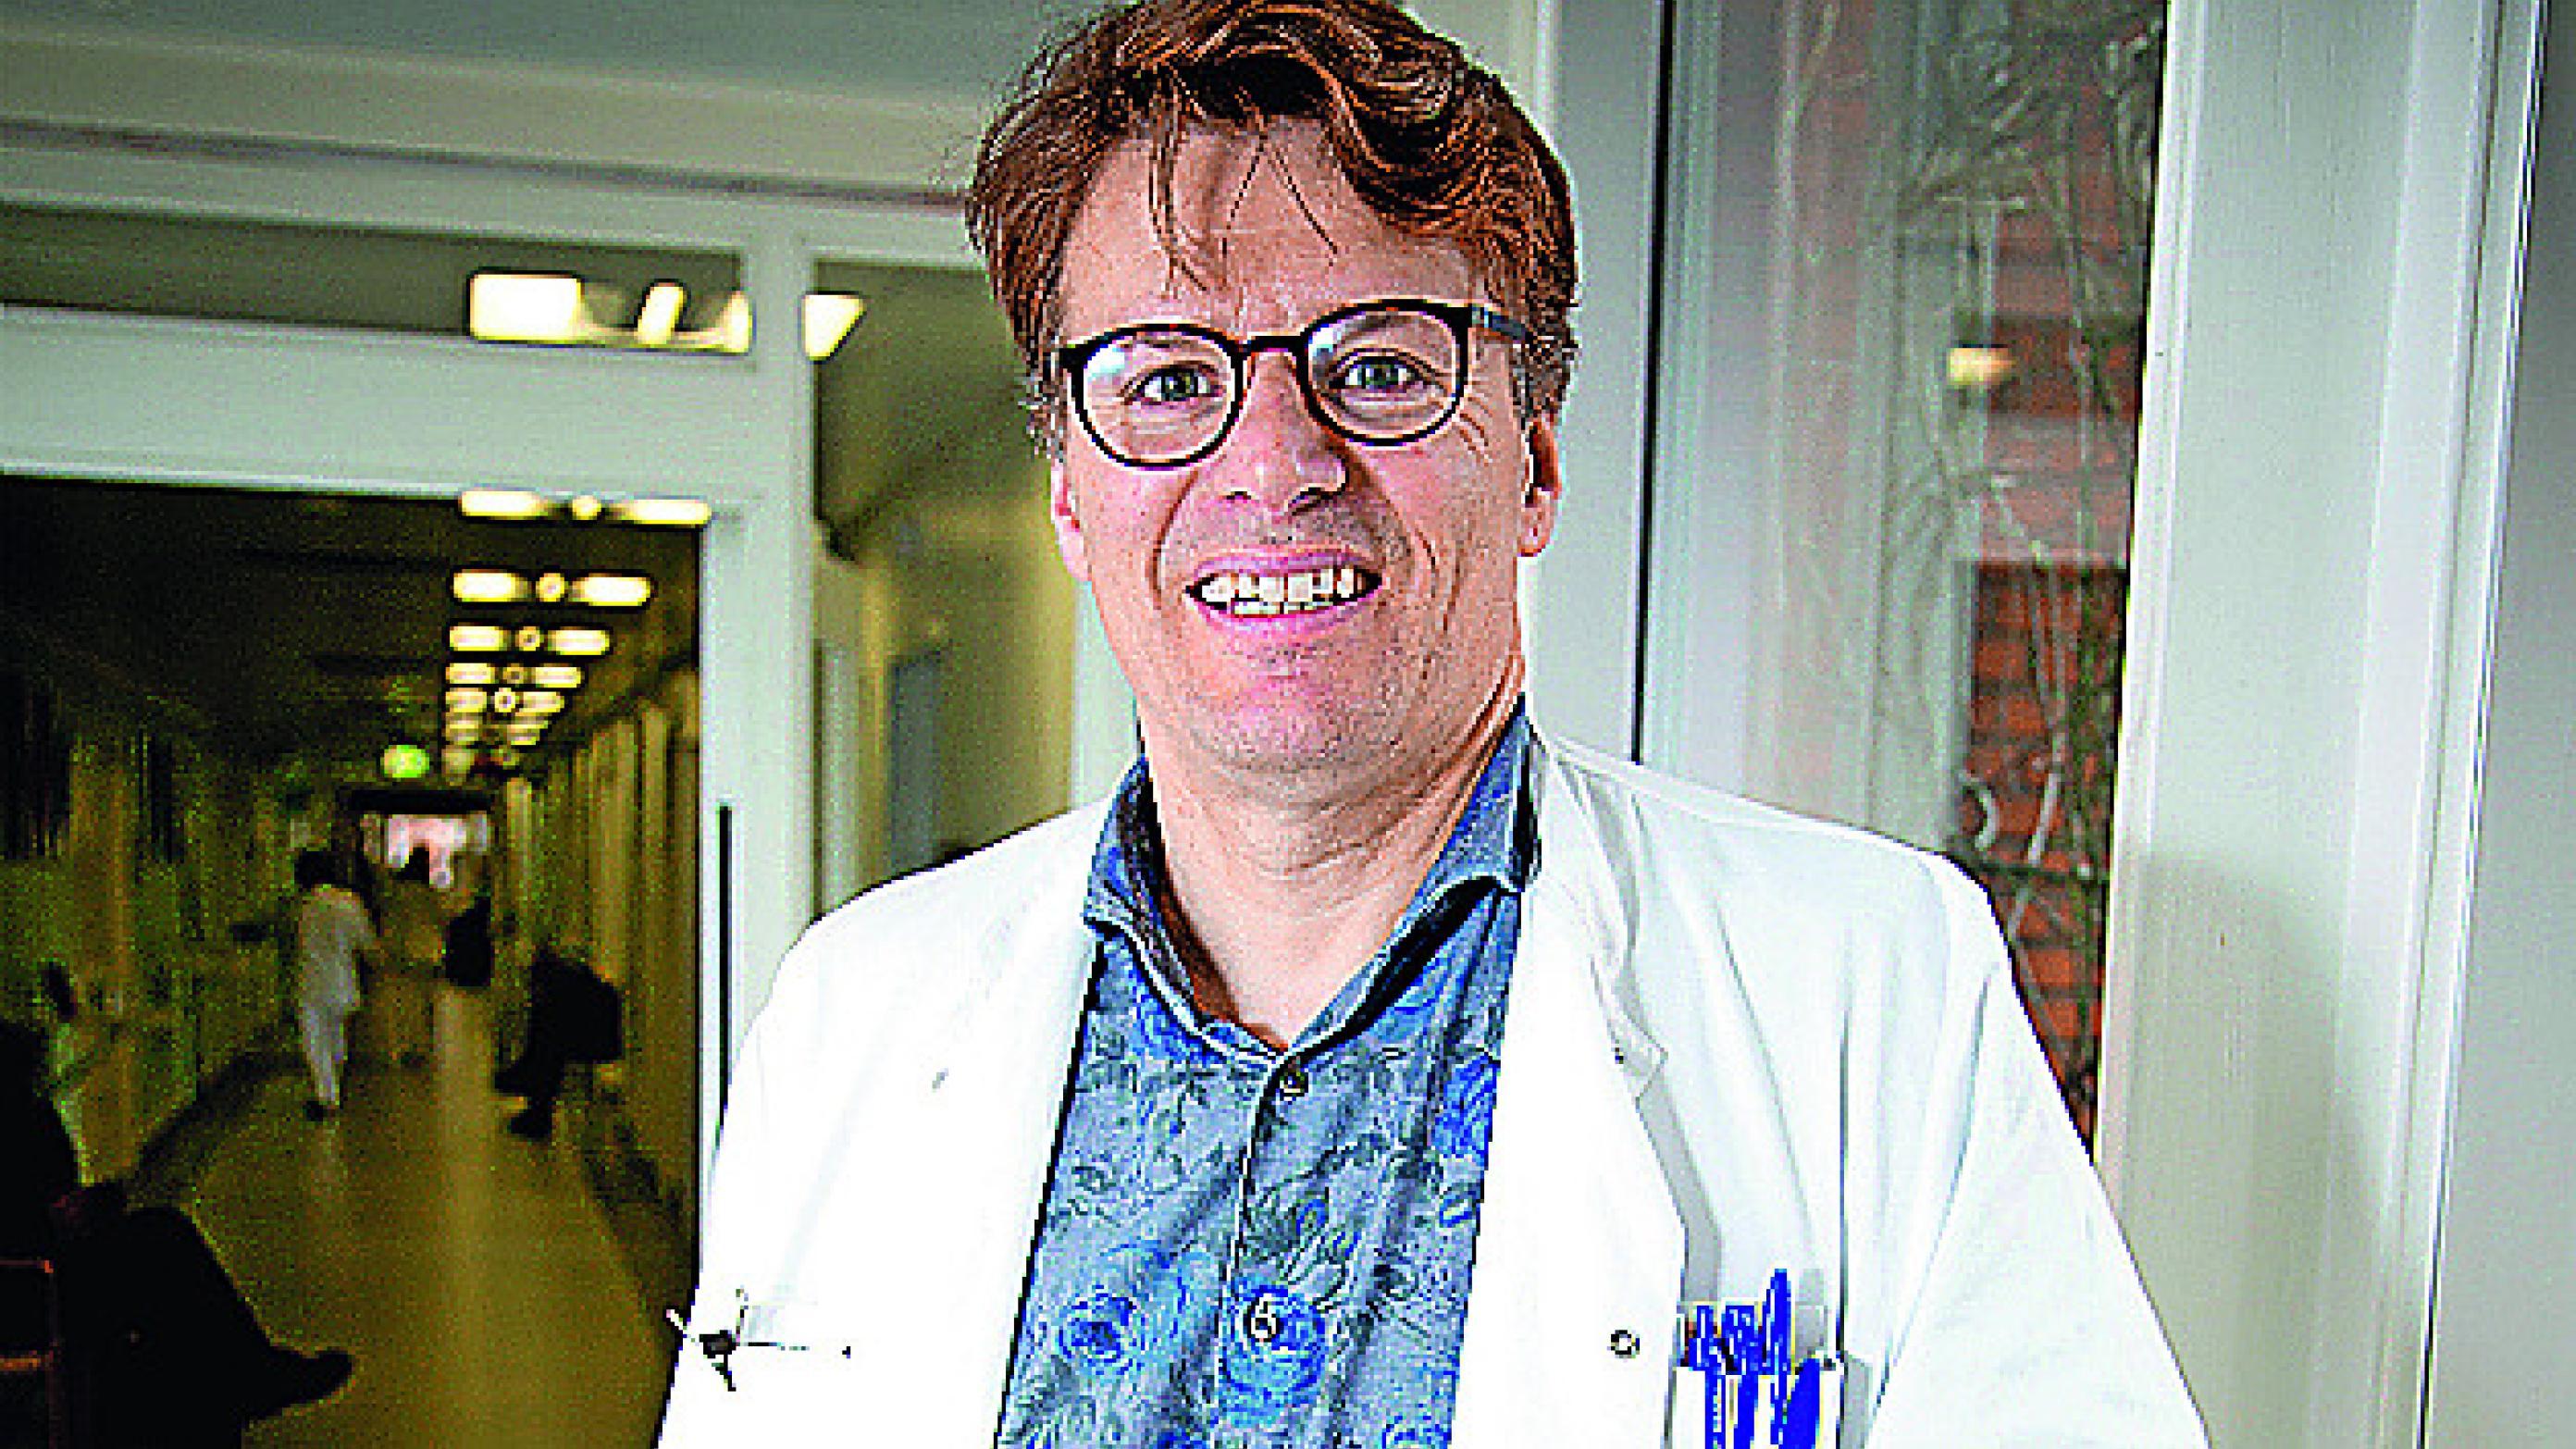 Overlæge og professor i endokrinologi ved Aarhus Universitet, Claus Gravholt har arbejdet i 13 år med sjældne hormonsygdomme. Han har især specialiseret sig i kønskromosomsygdomme som Turner syndrom og Klinefeller syndrom.  Foto: Helene Bagger